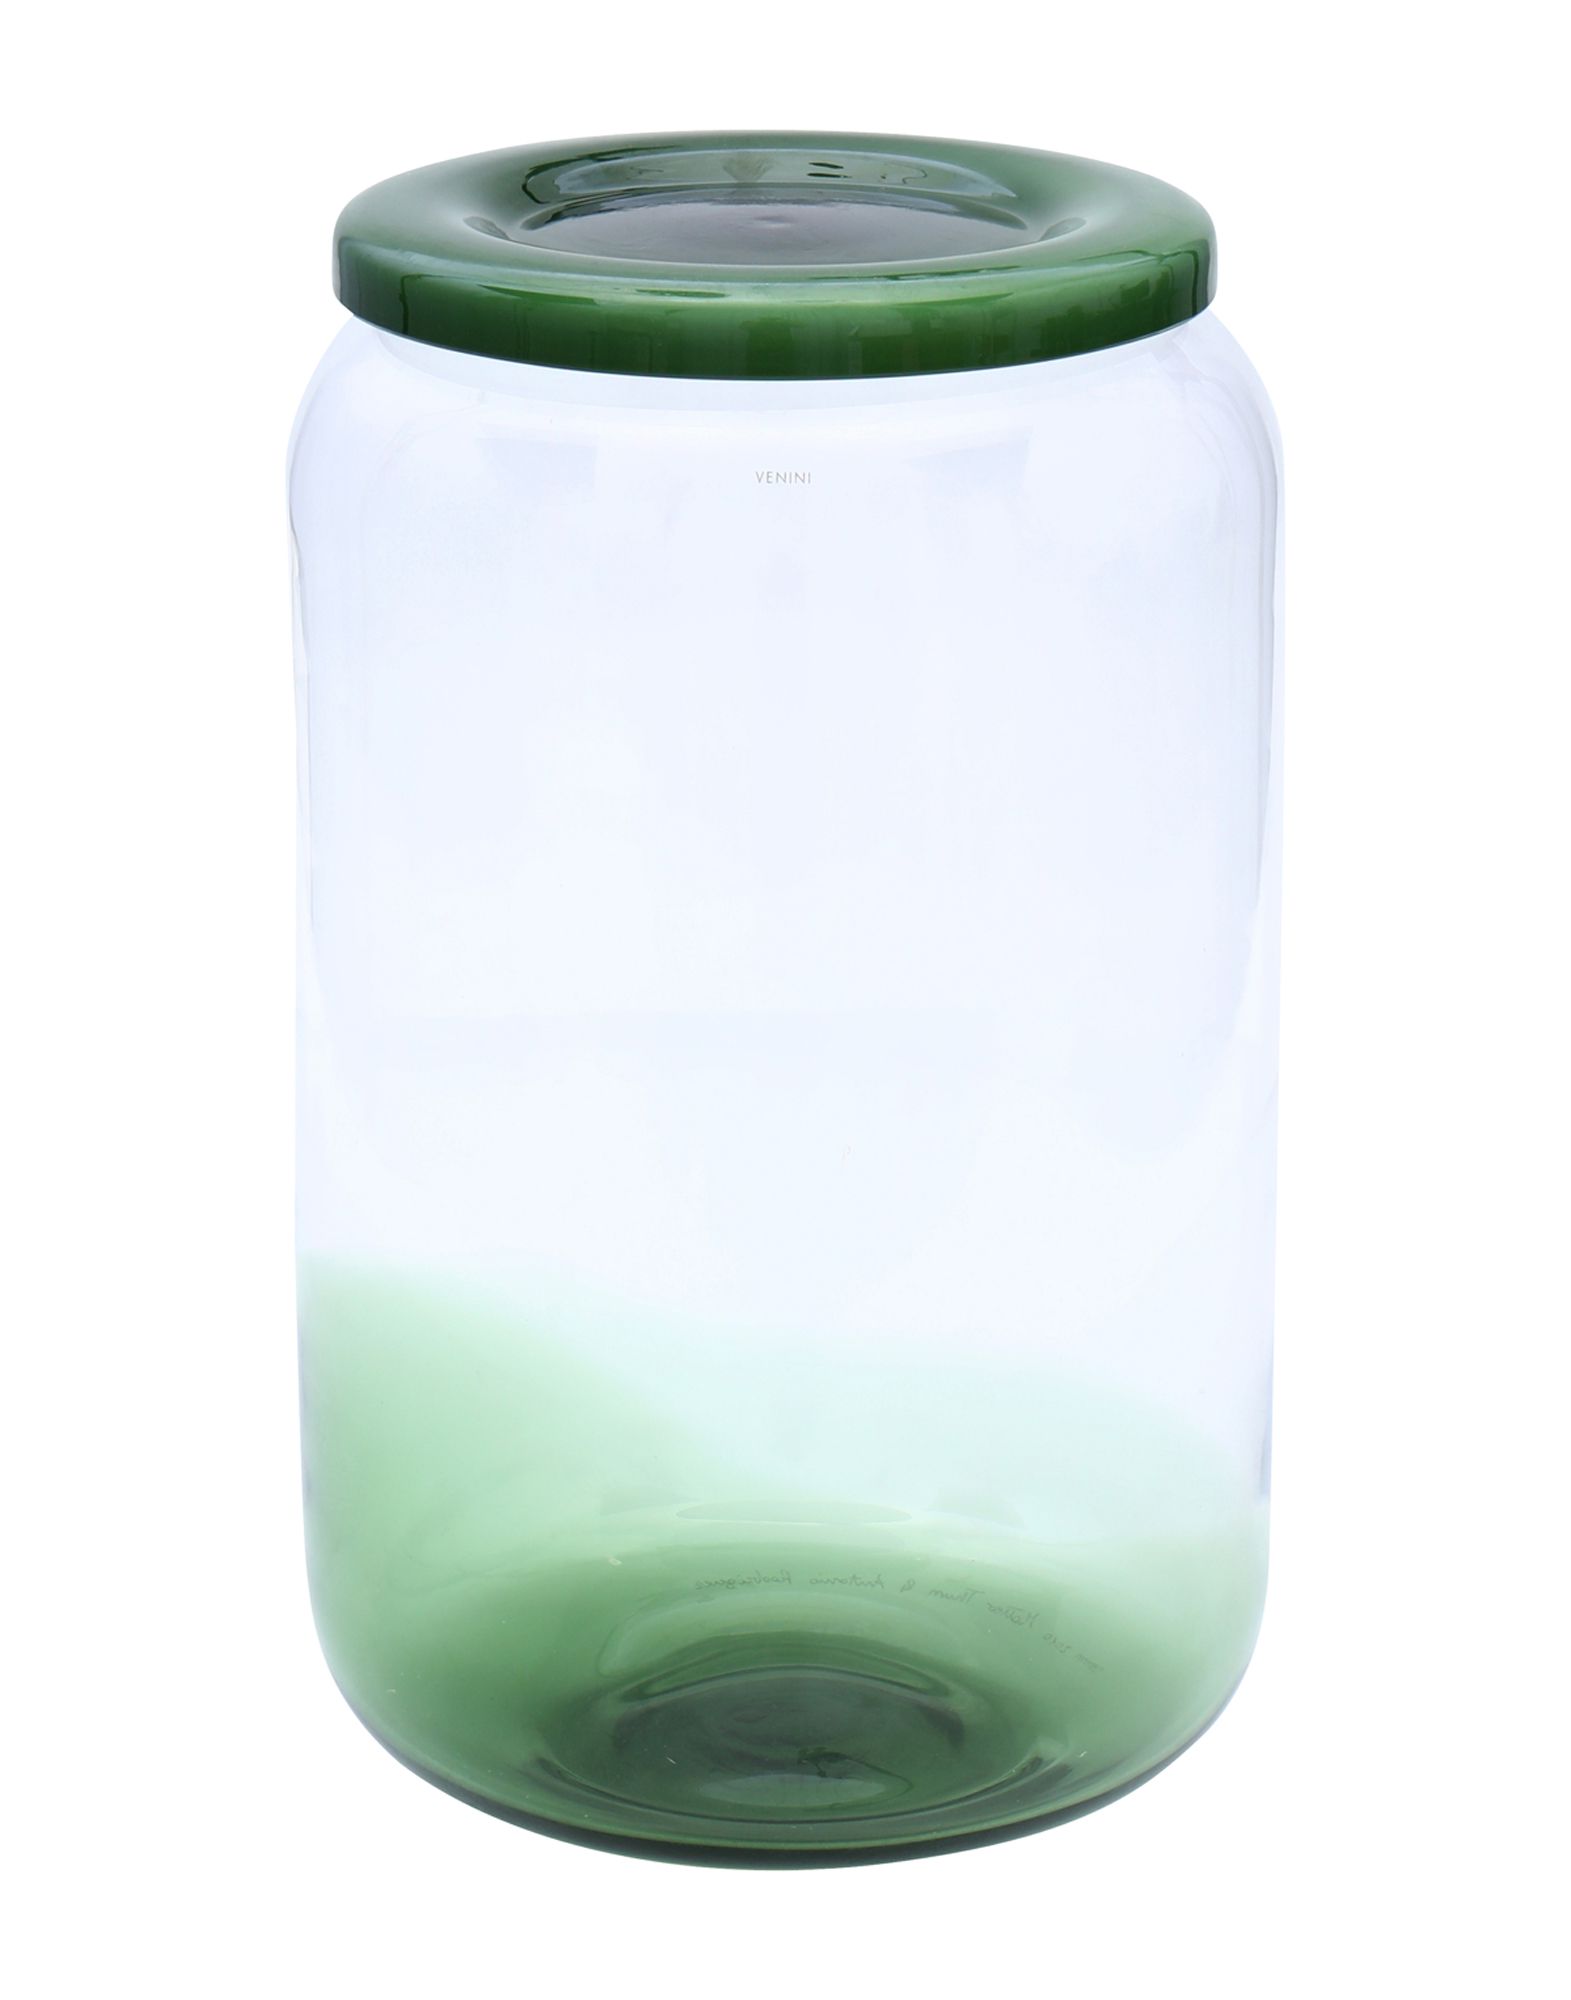 《2万円以上オーダーで送料無料》VENINI Unisex ベース グリーン 吹きガラス Susanni